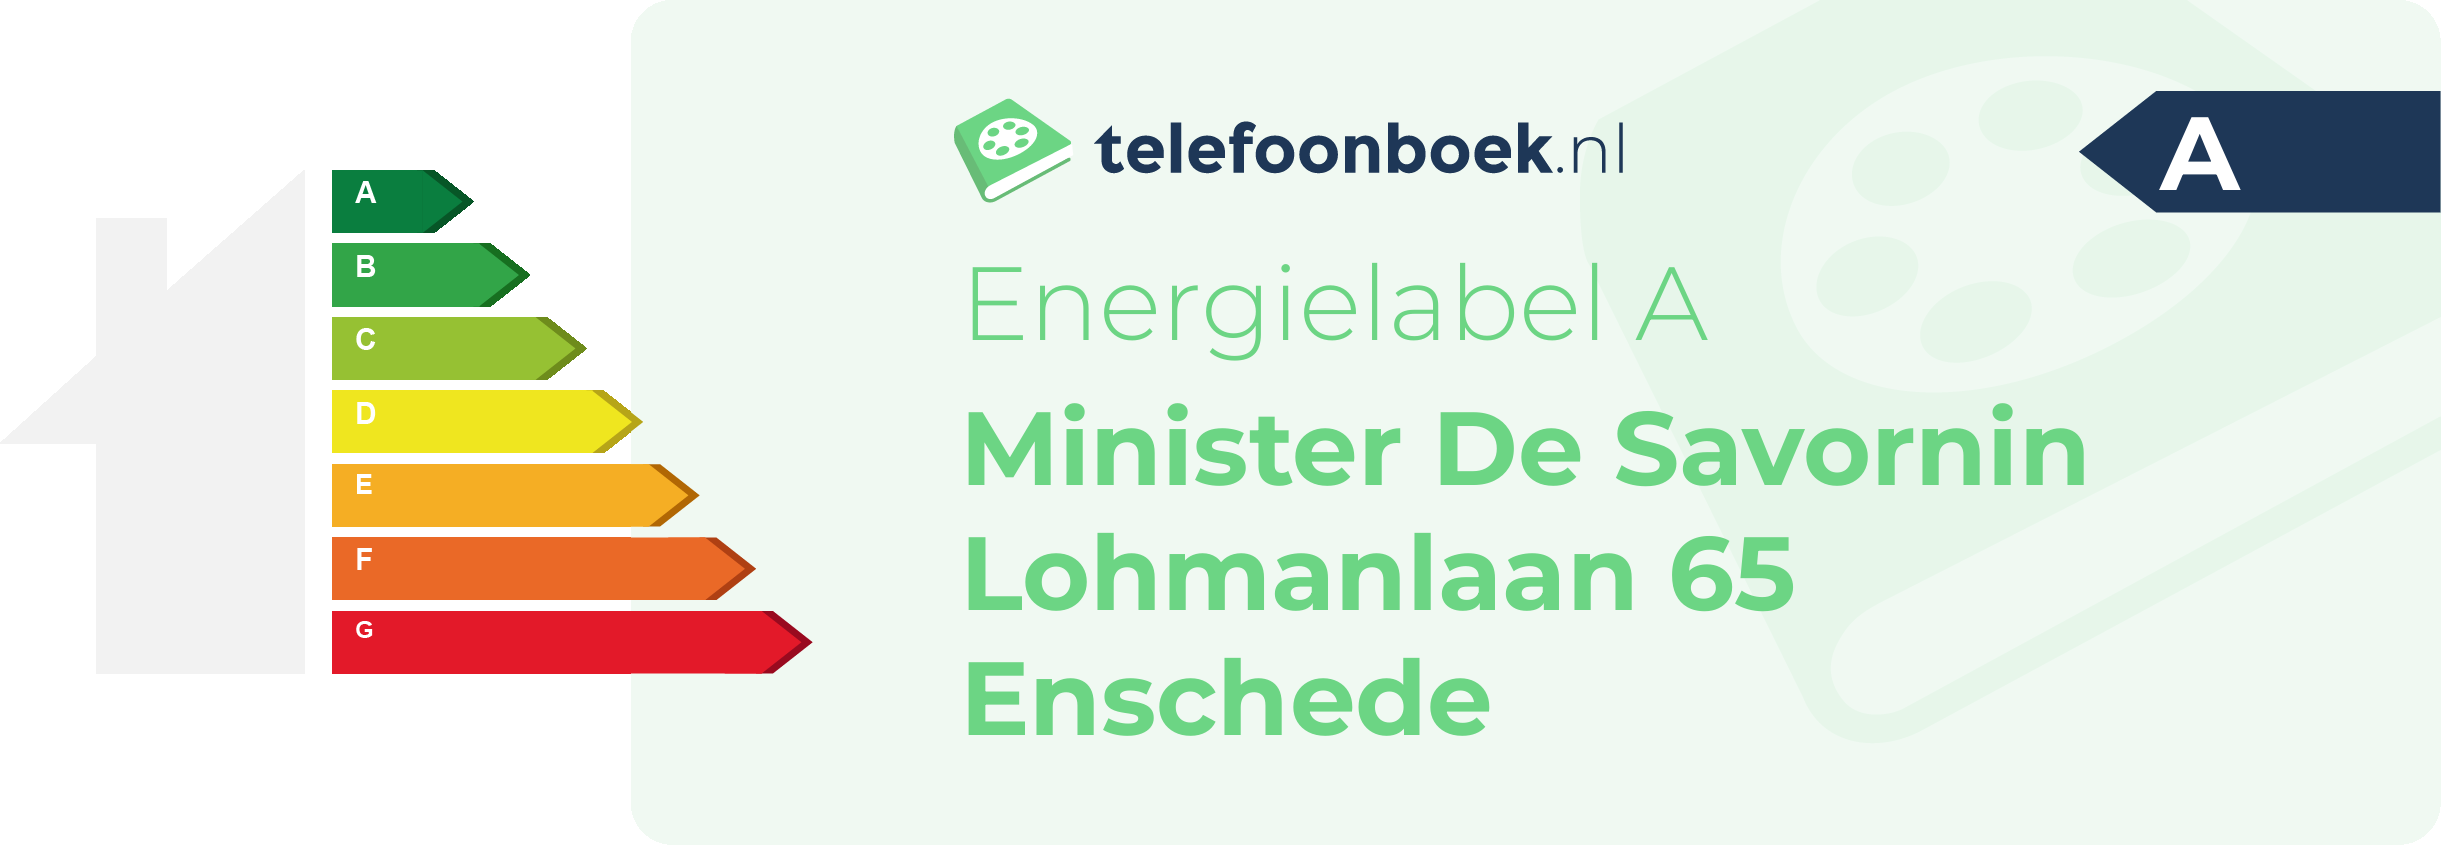 Energielabel Minister De Savornin Lohmanlaan 65 Enschede